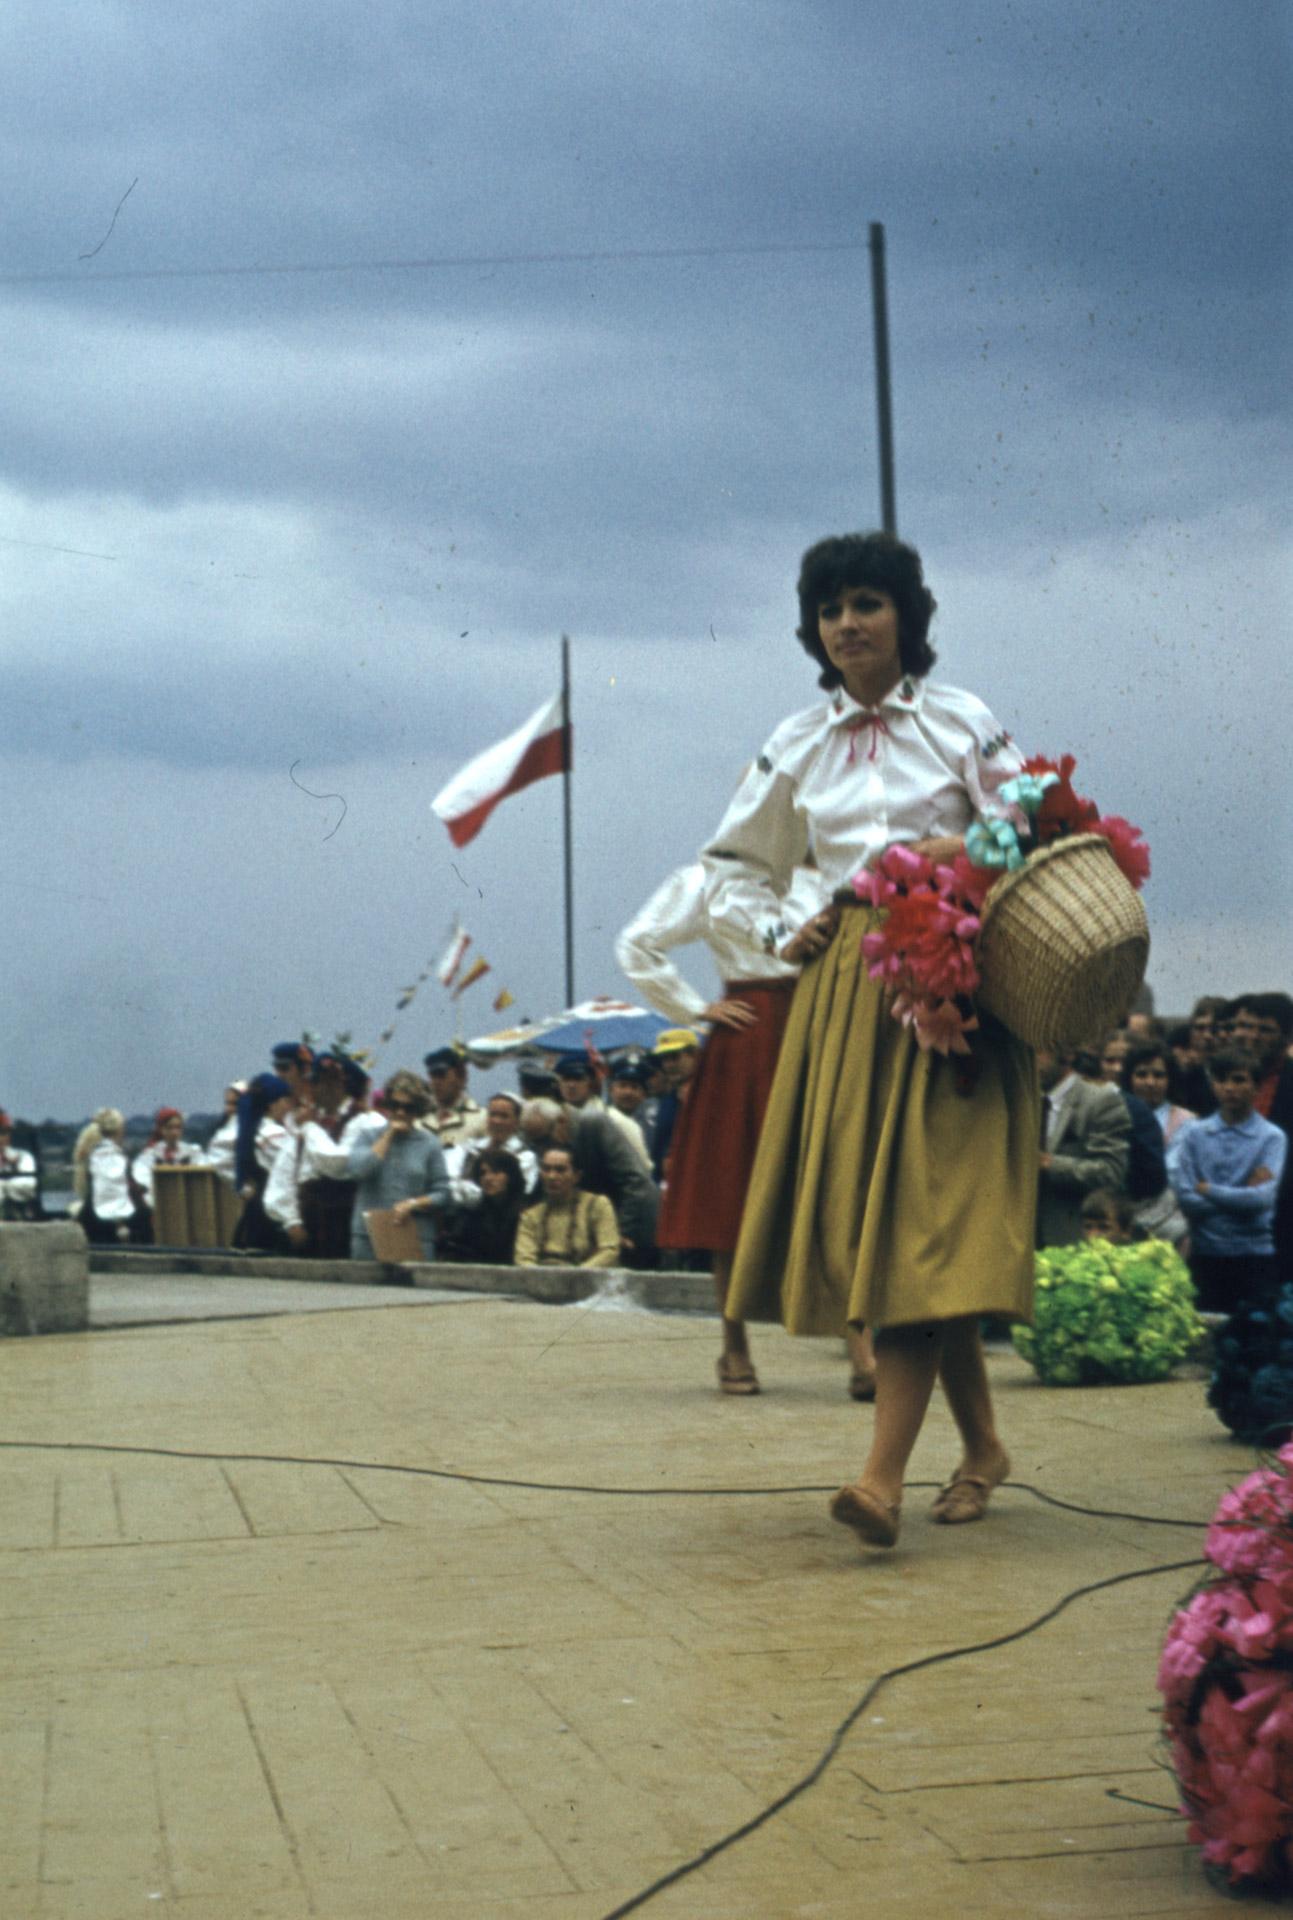 File:Elementy folklorystyczne w modzie Polska”, CPLiA) - Płock 000384s.jpg - Wikimedia Commons